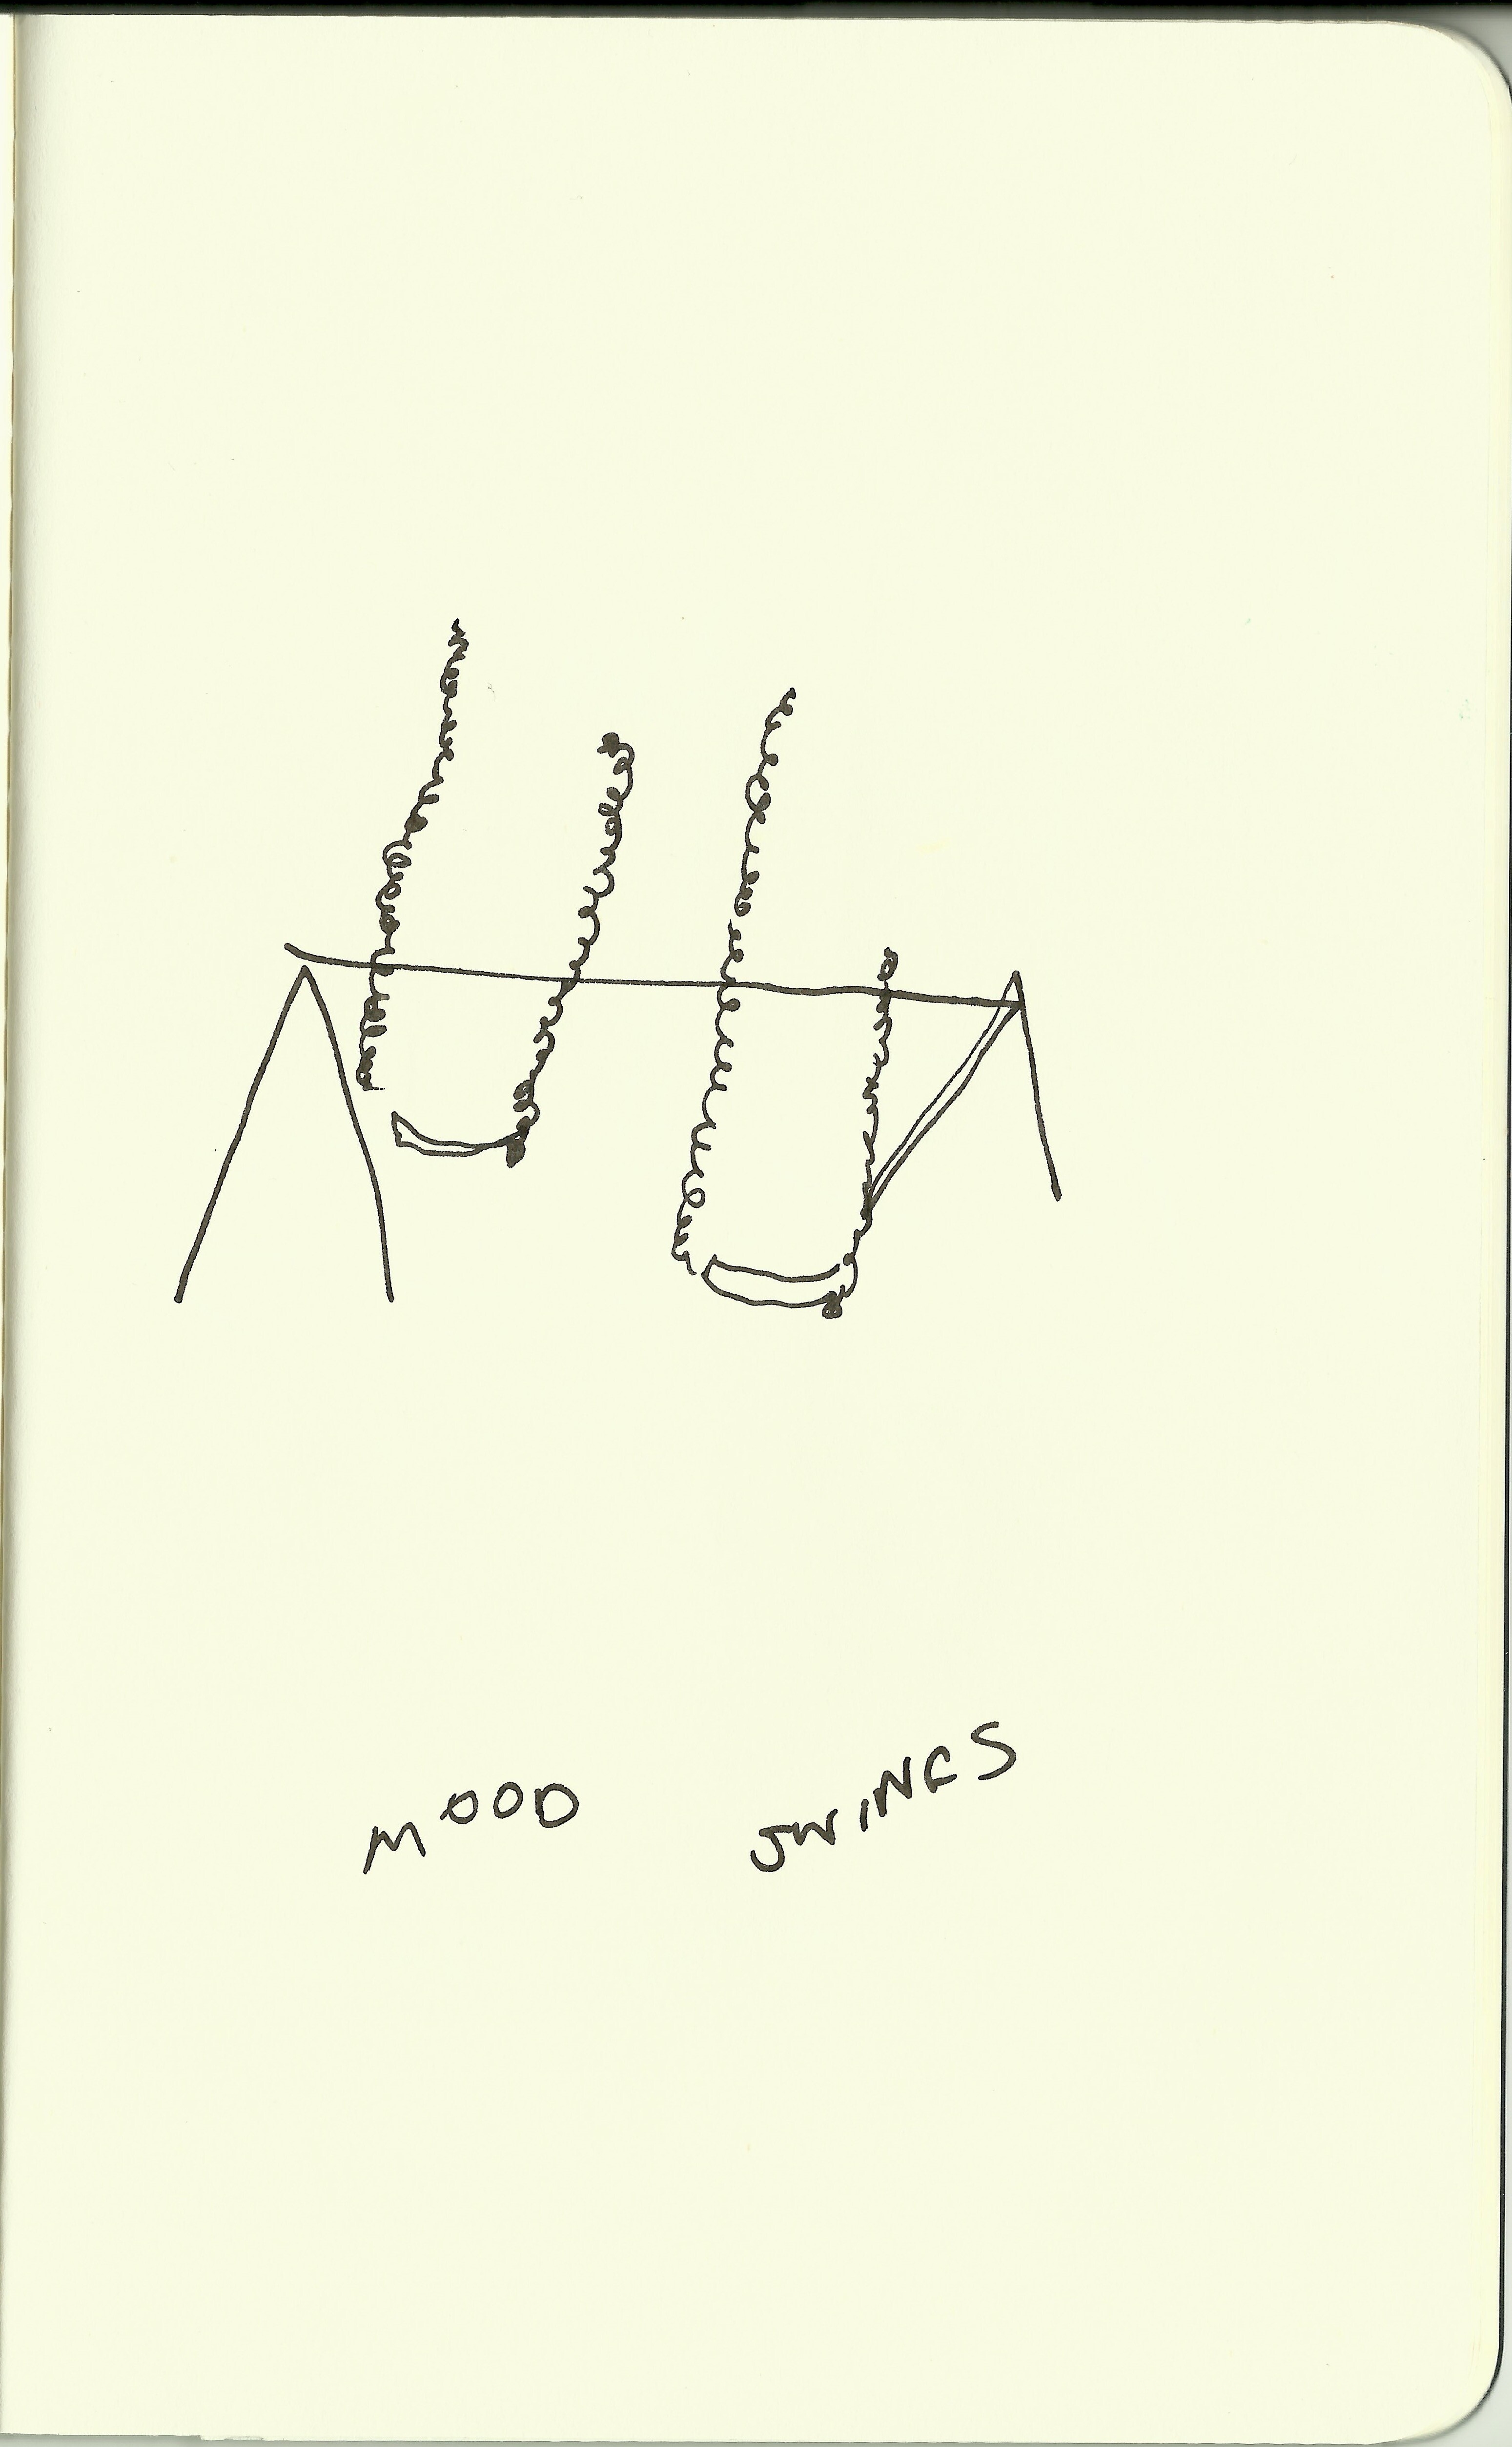 Mood-Swings-2-copy.jpg